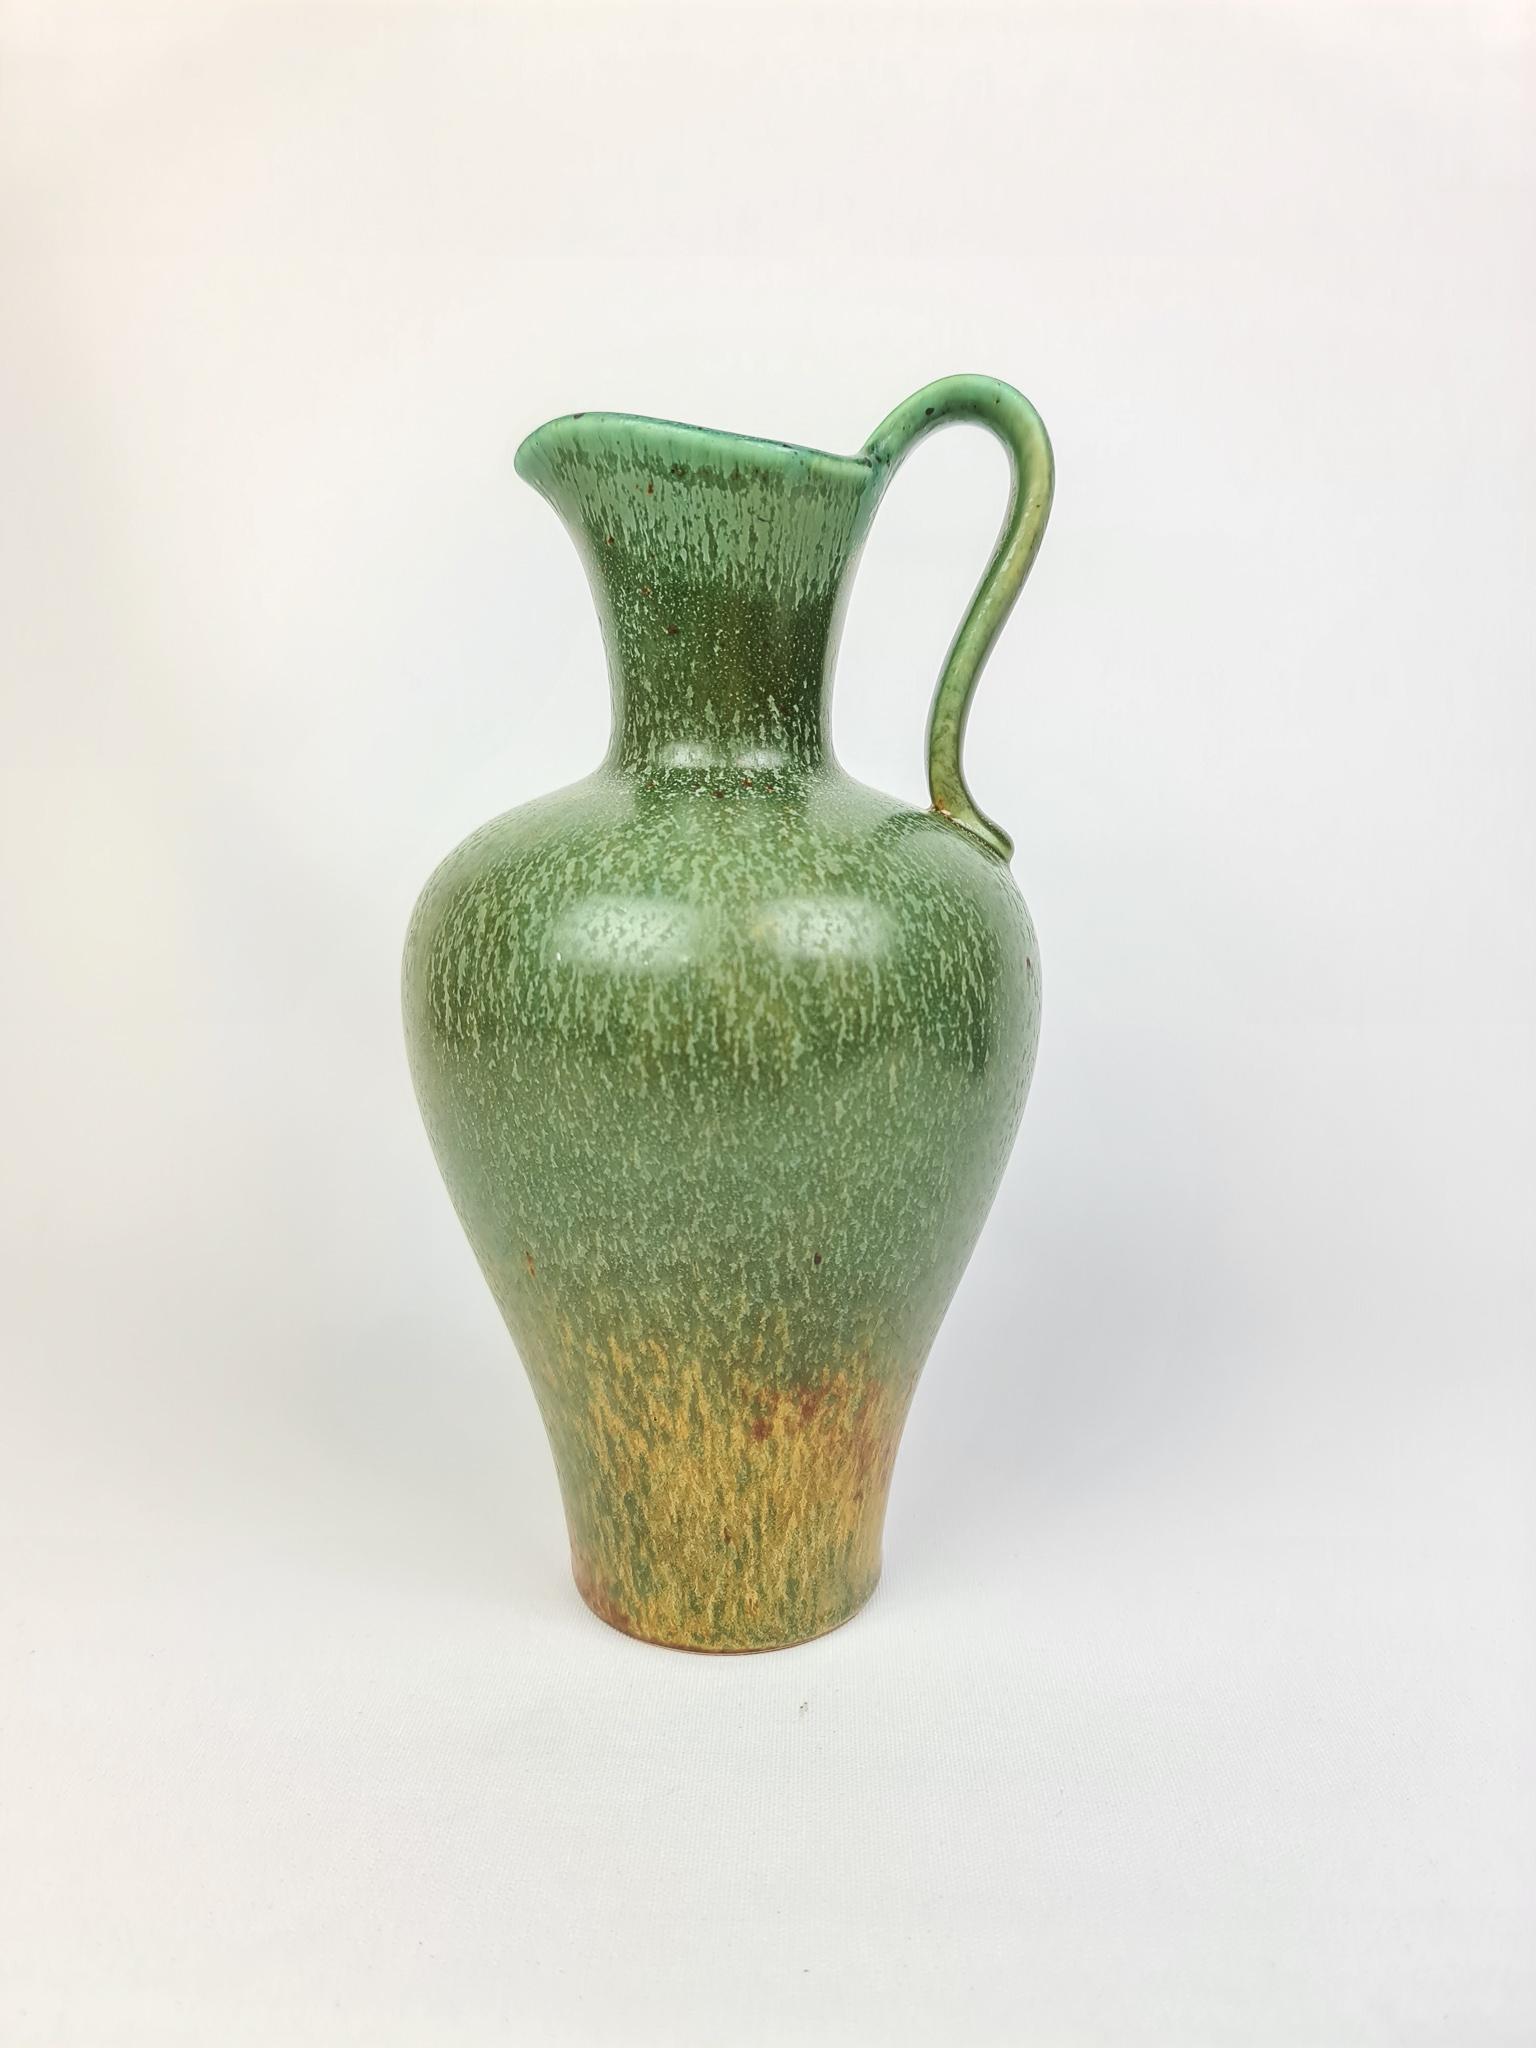 Eine prächtige Vase von Rörstrand und dem Hersteller/Designer Gunnar Nylund. Hergestellt in Schweden um die Mitte des Jahrhunderts. Schön glasiert in wechselnden Farben 

Guter Zustand. 

Maße: H 22 cm, B 14 cm.
 